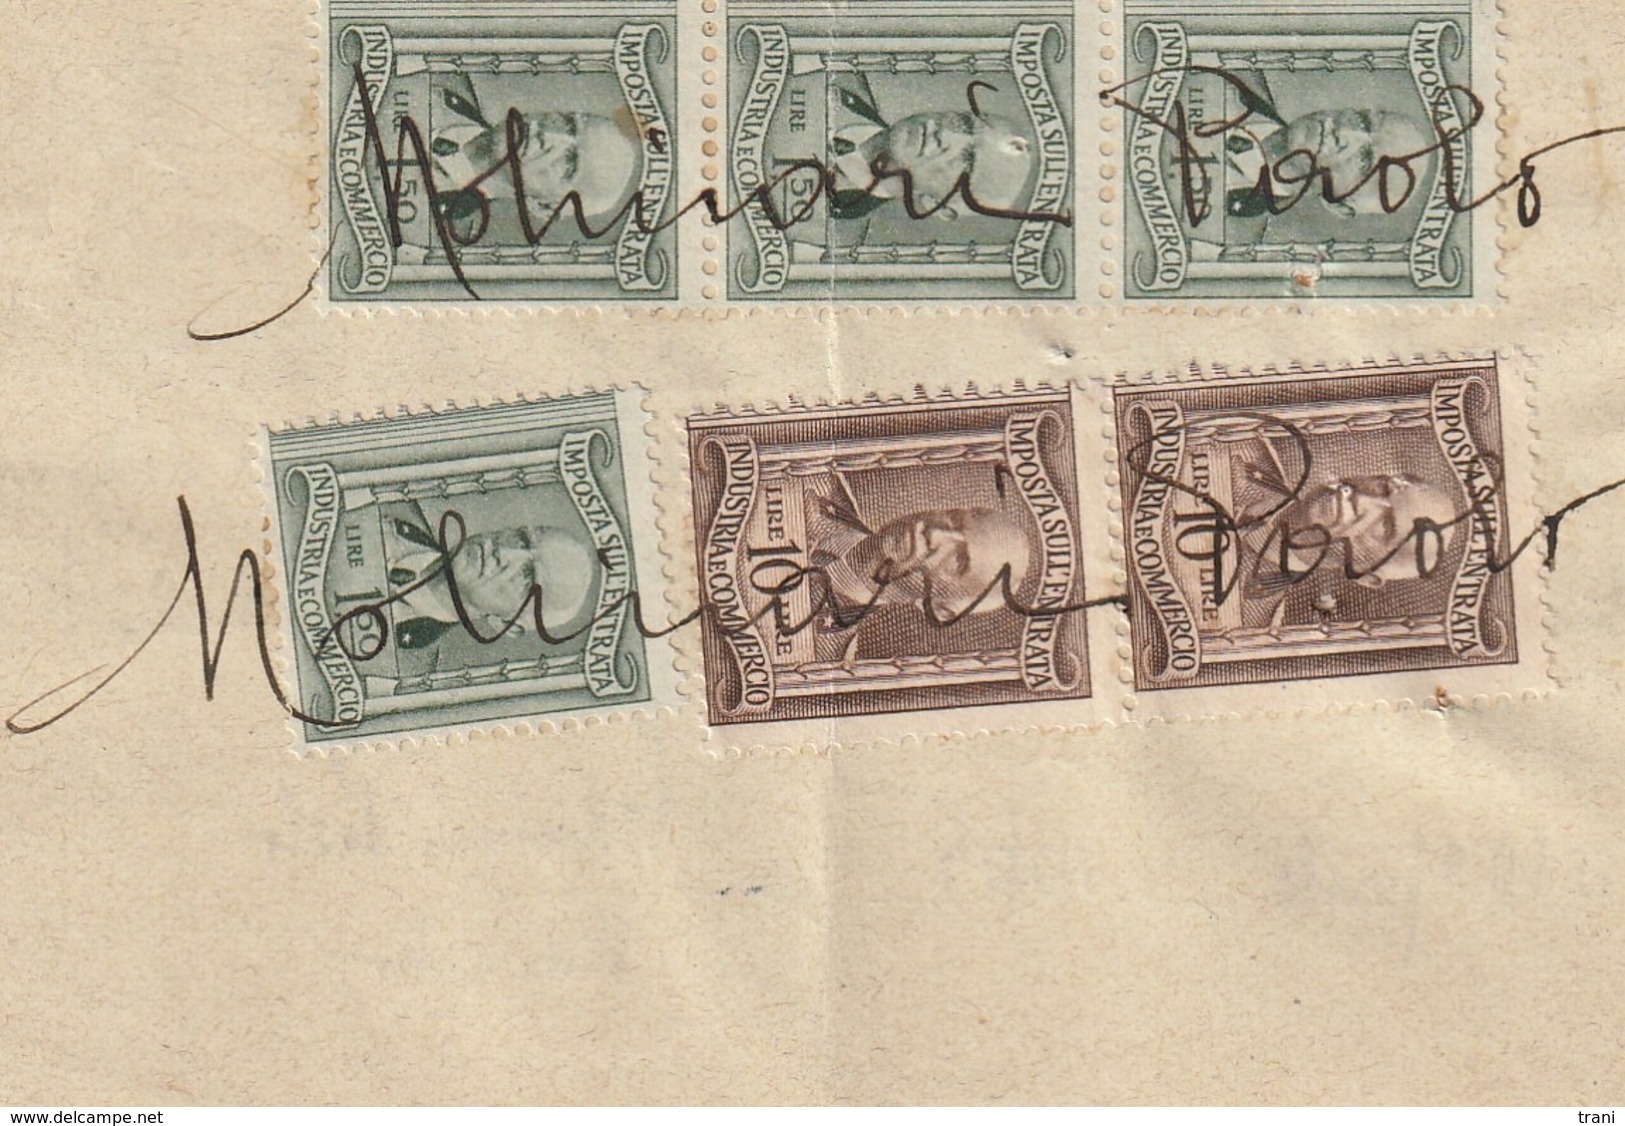 RICEVUTA - Anno 1945 - Revenue Stamps